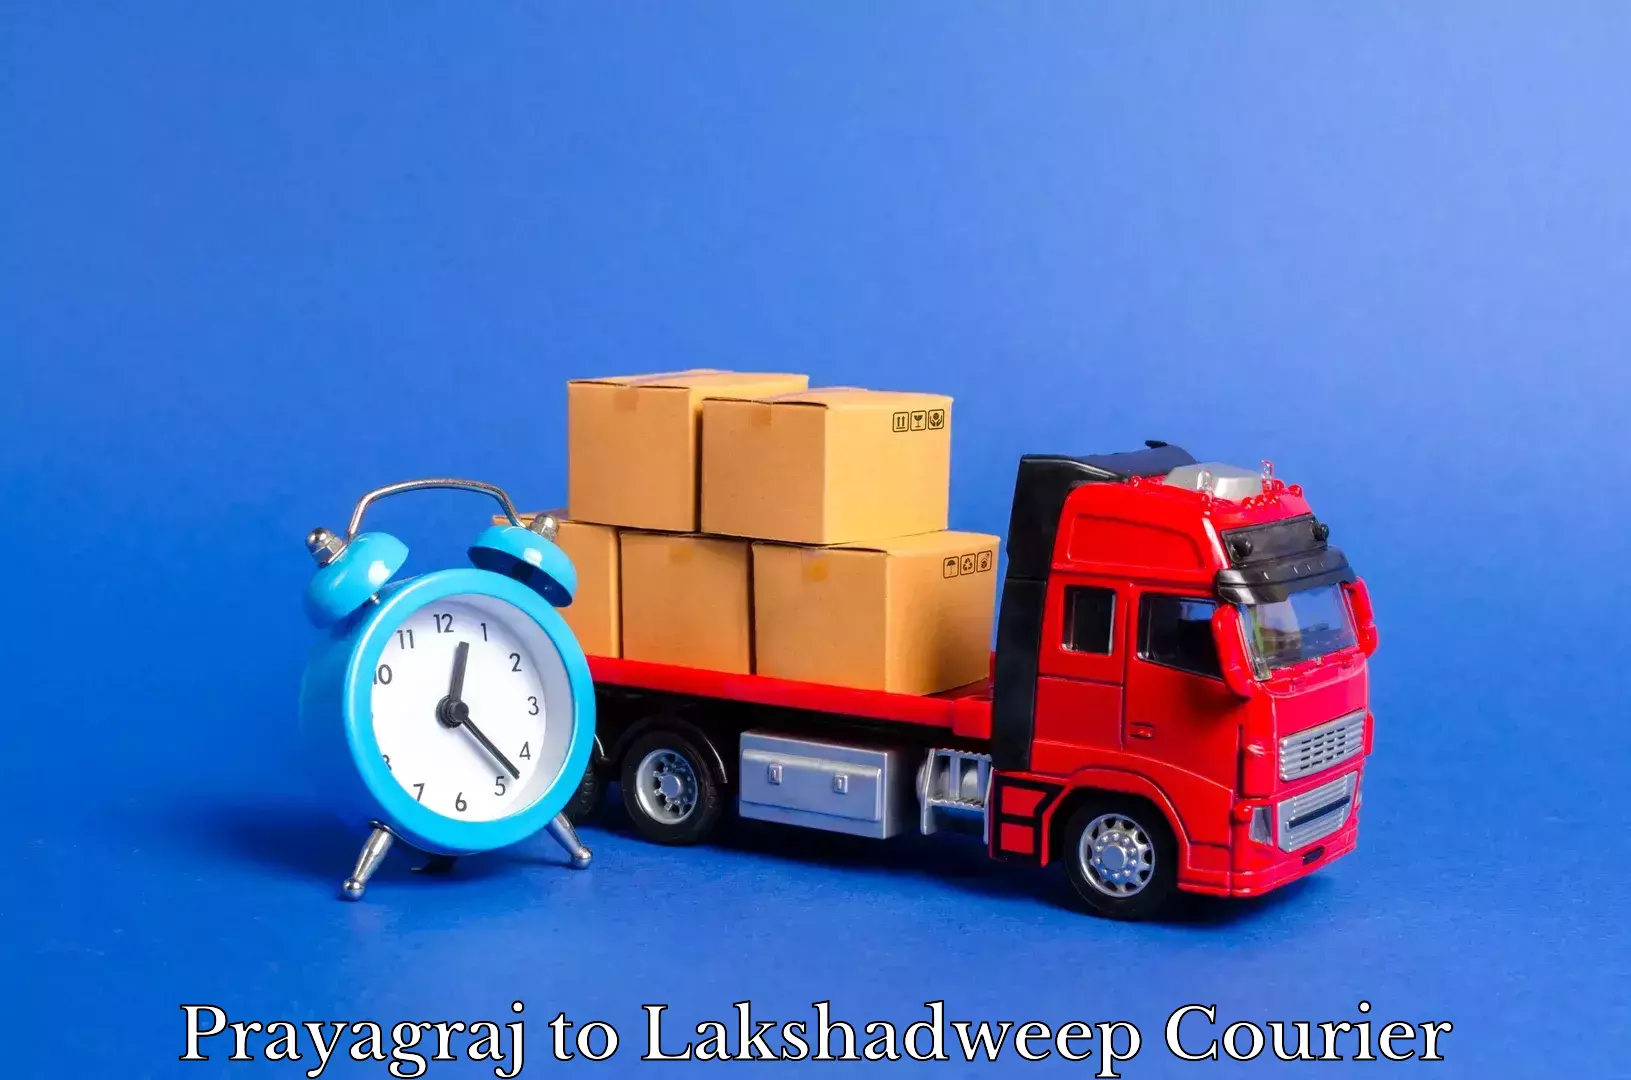 Furniture transport solutions Prayagraj to Lakshadweep